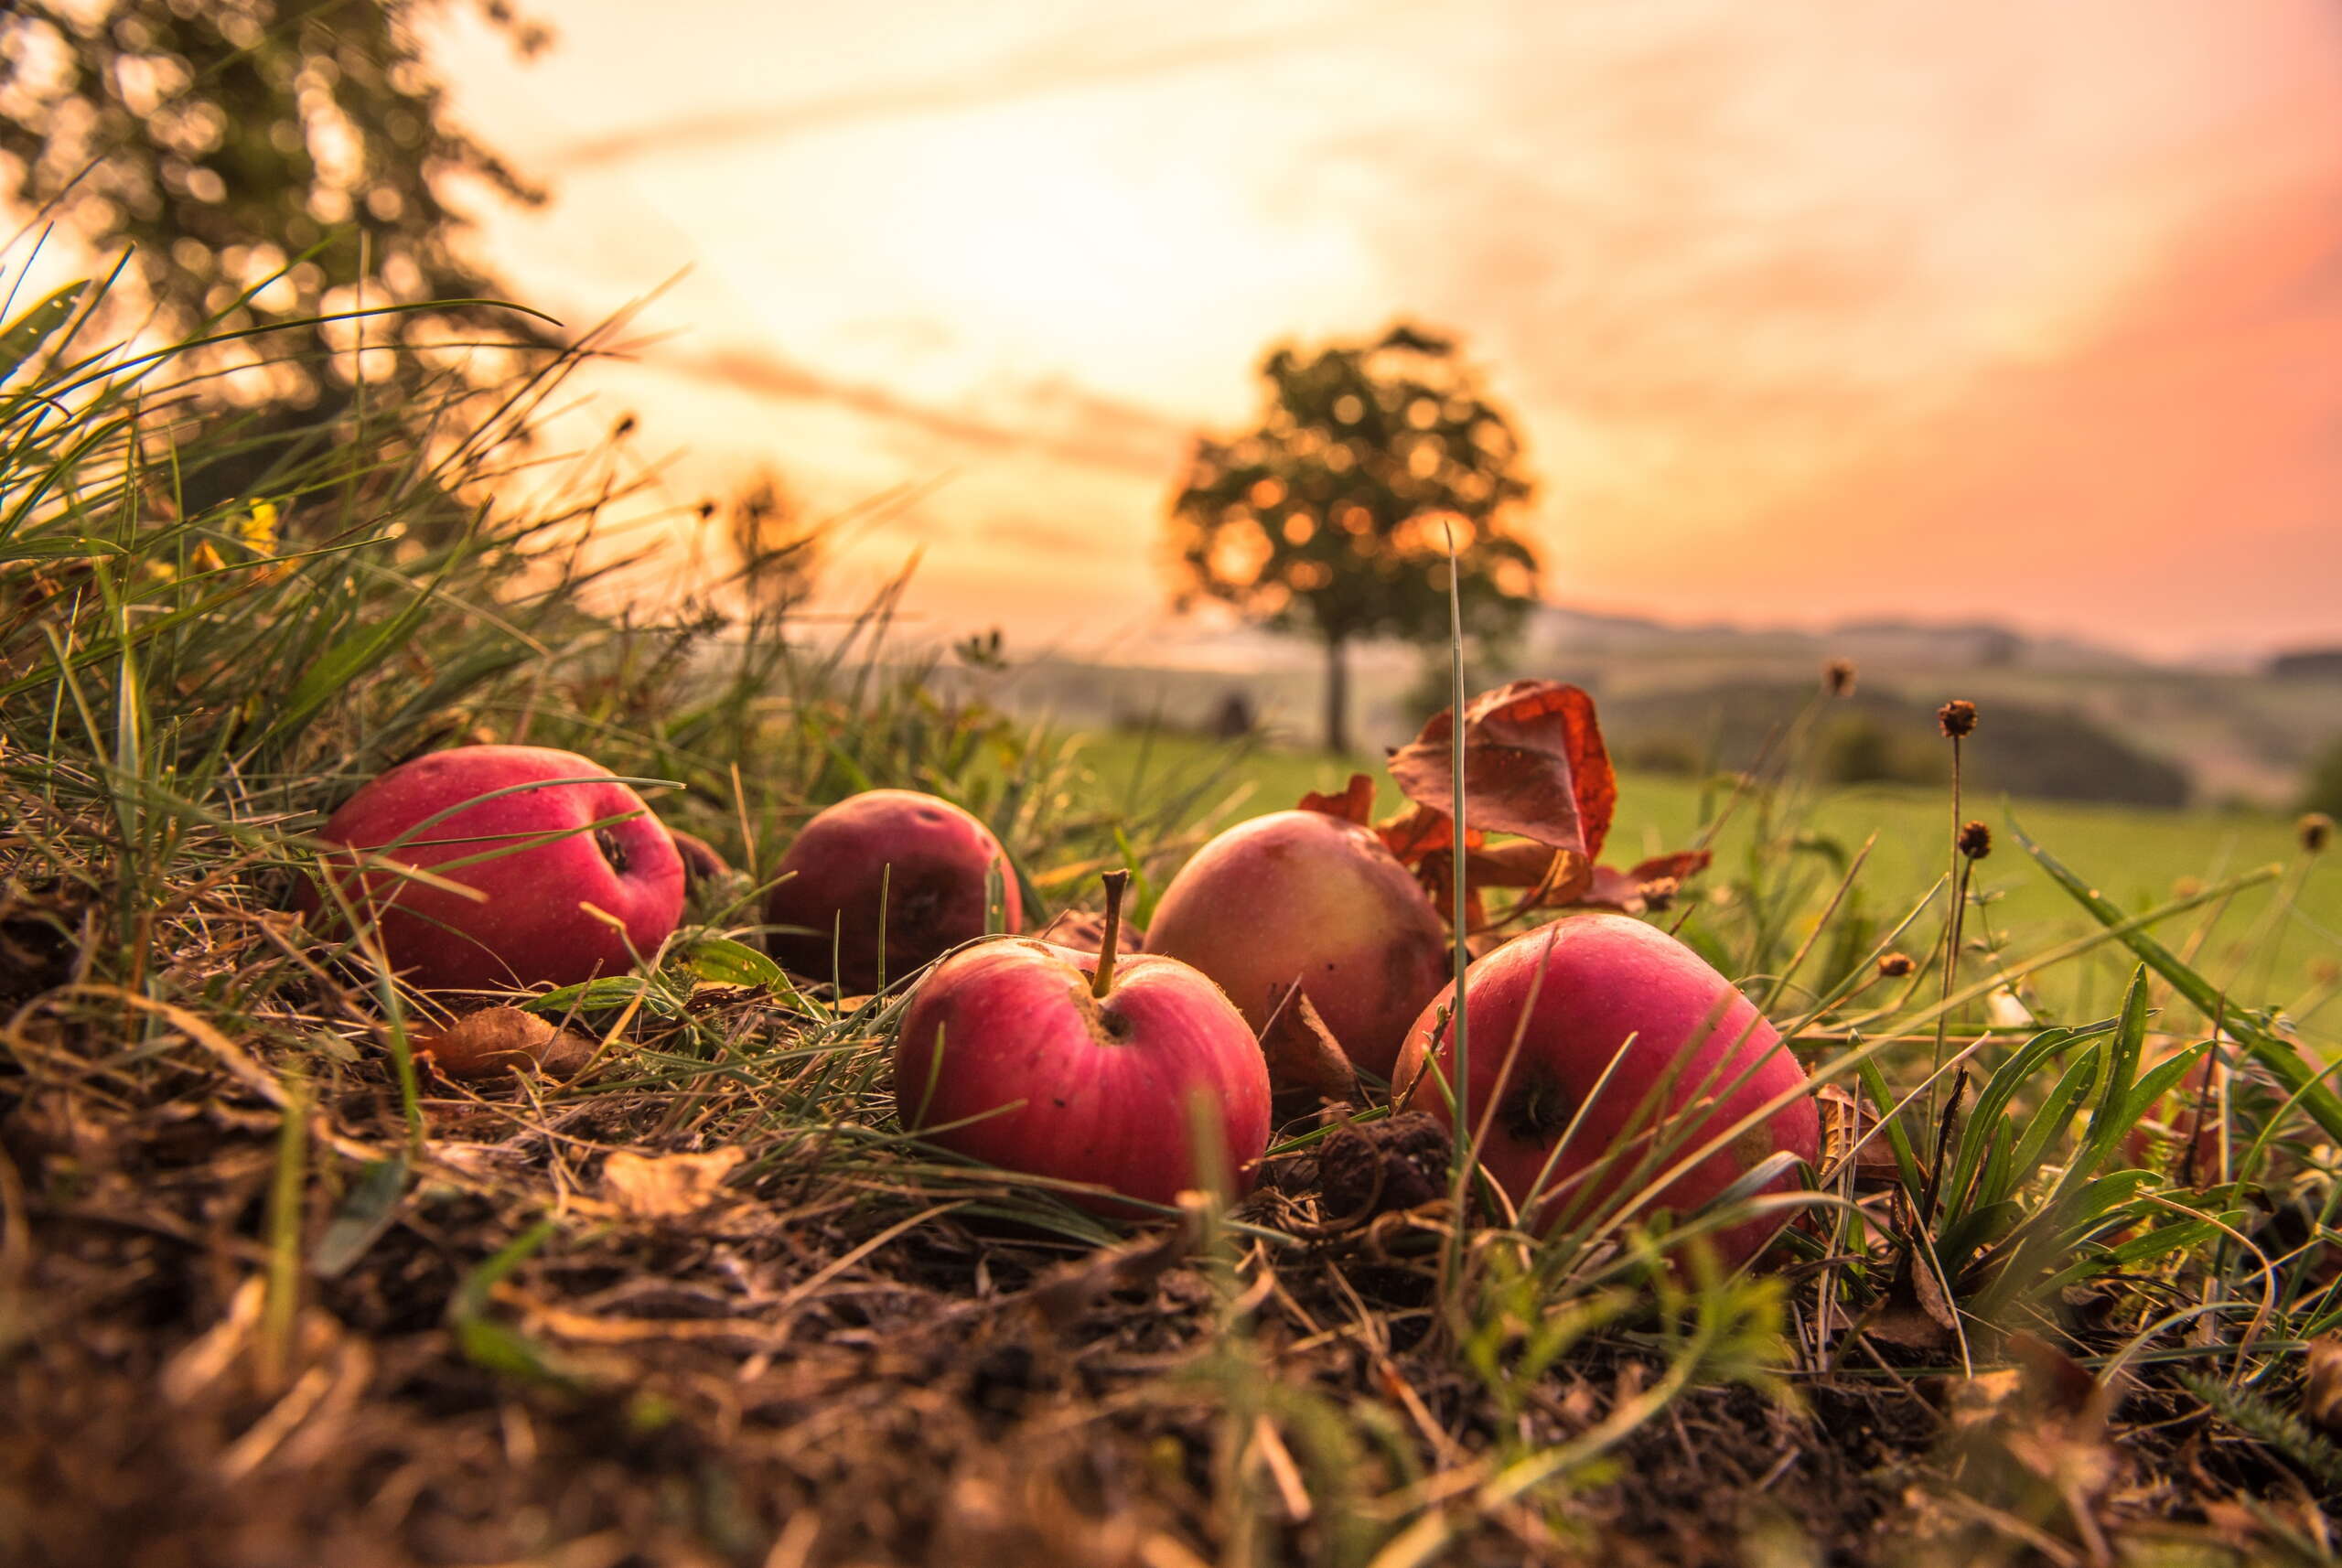 Zu sehen sind leuchtend rote Äpfel, sie Ligen im Gras und der Sonnenuntergang wirft goldenes Licht auf die Äpfel.